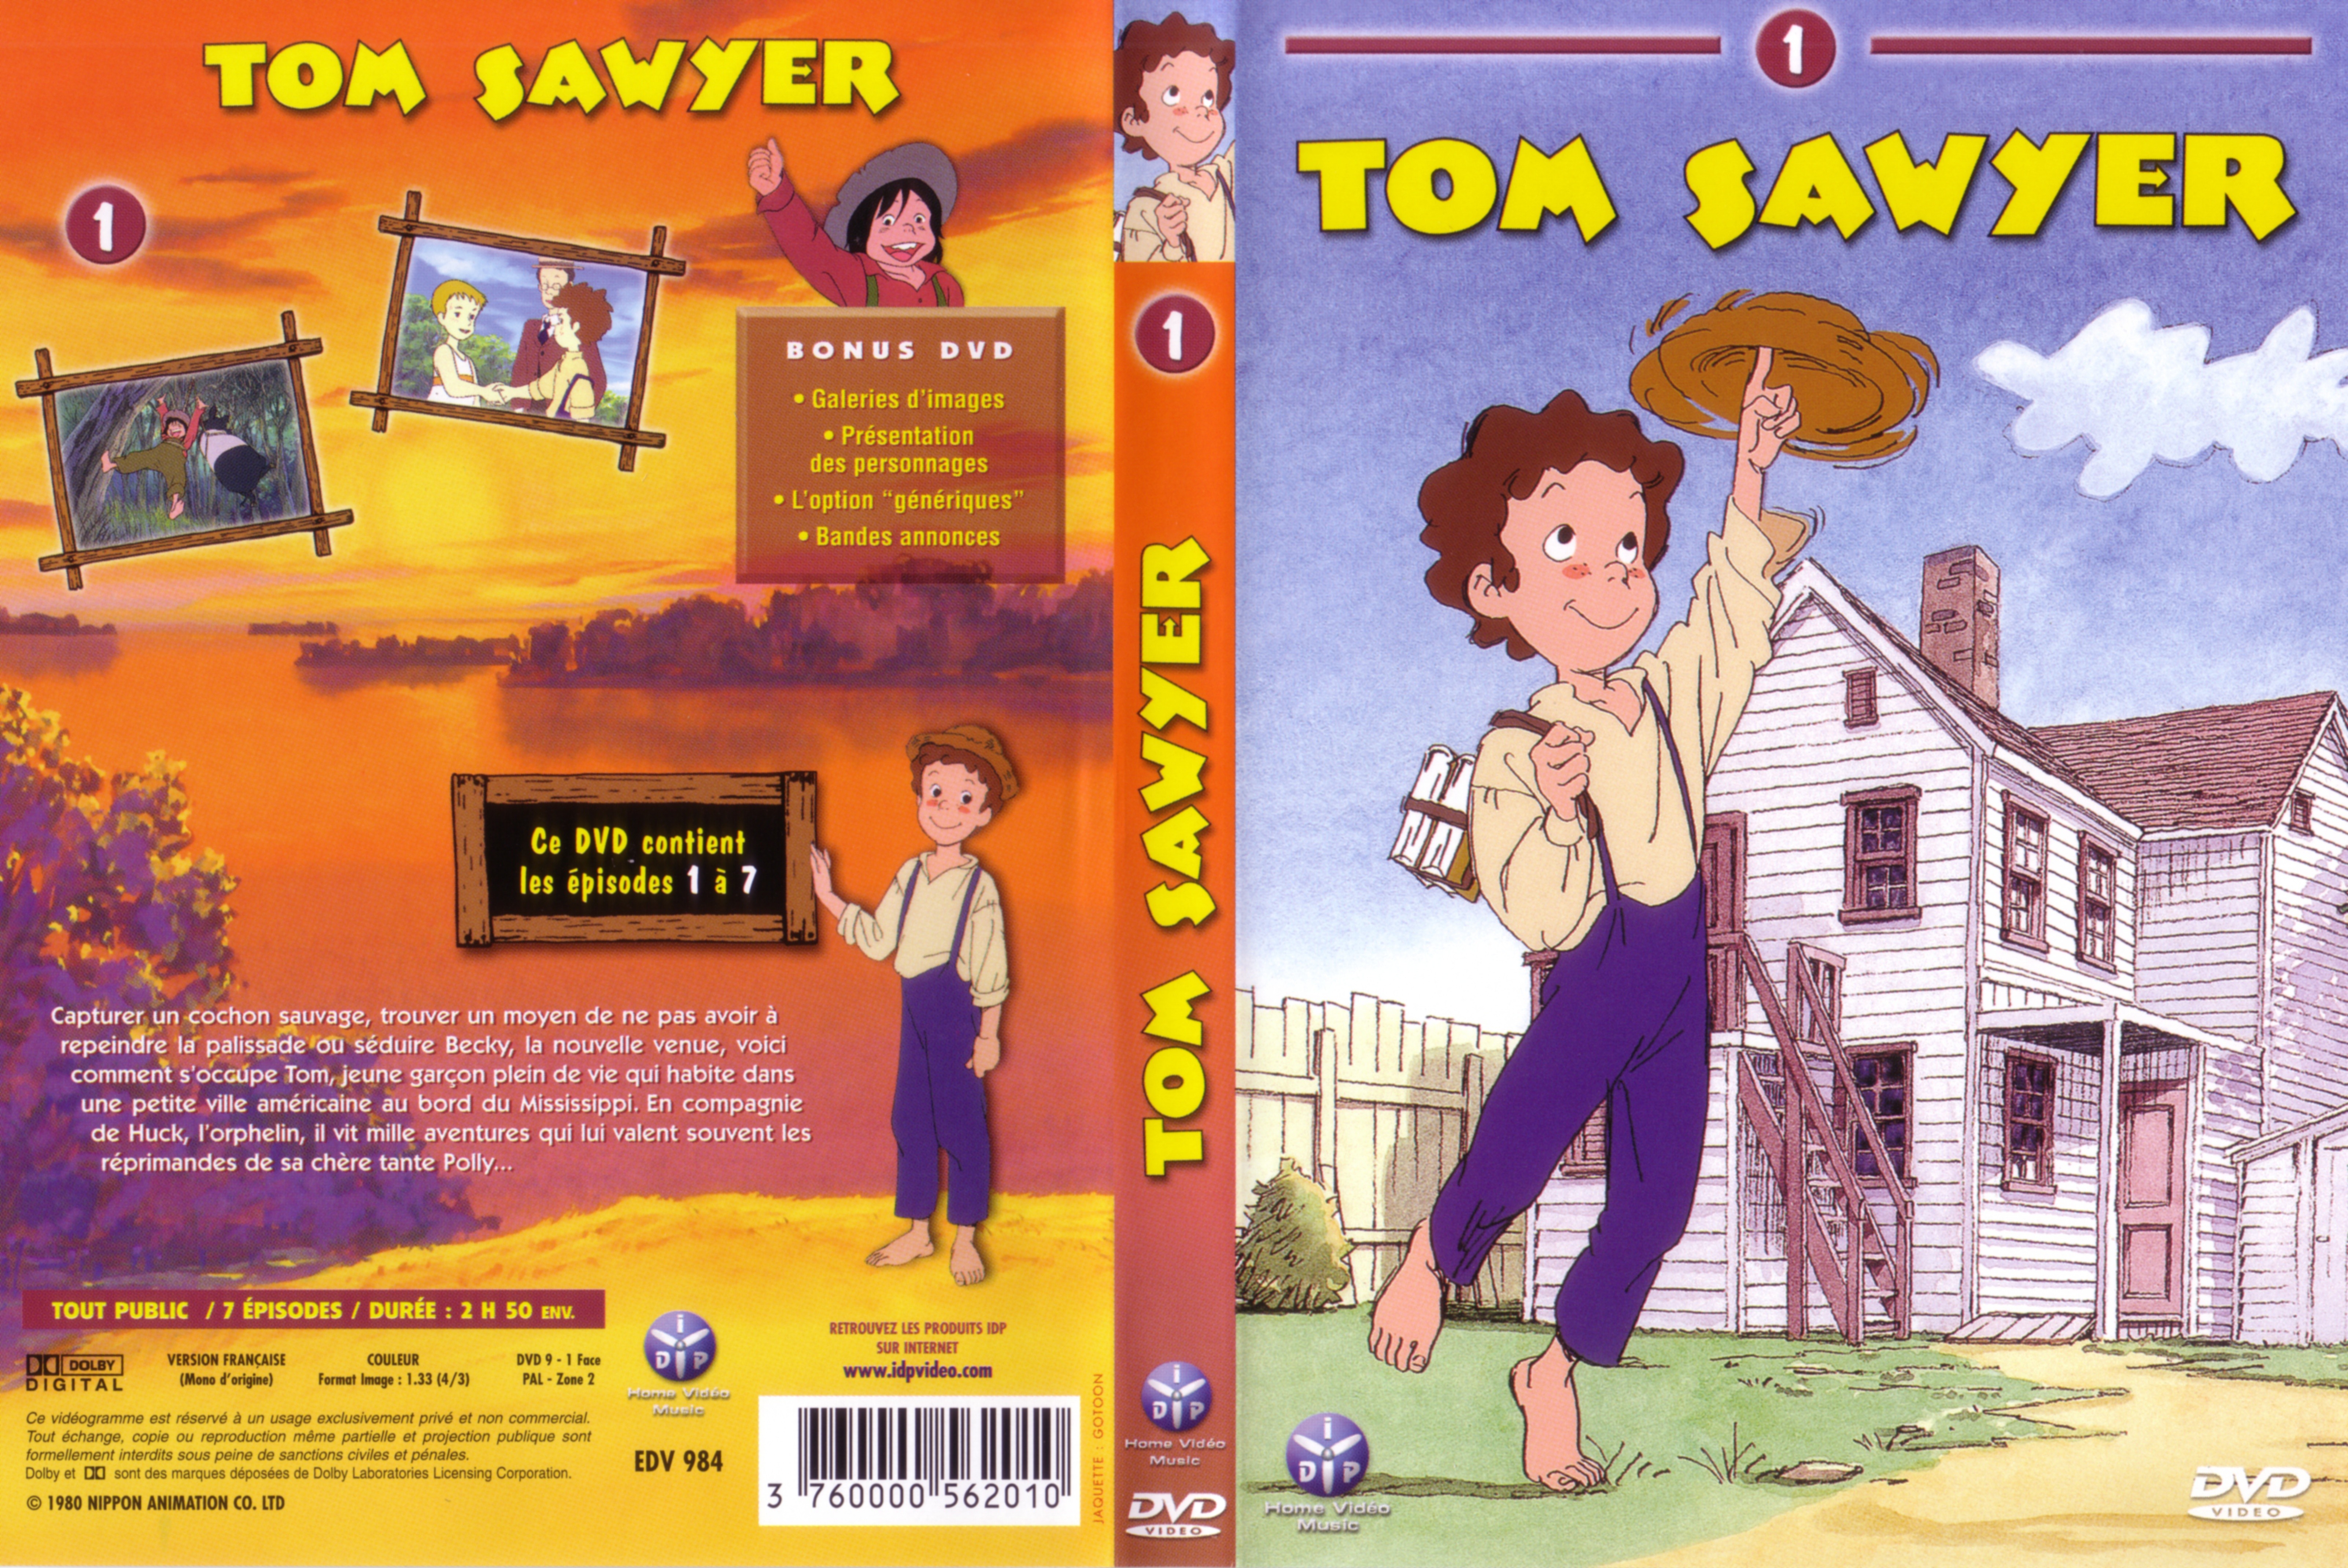 Jaquette DVD Tom Sawyer vol 1 v2